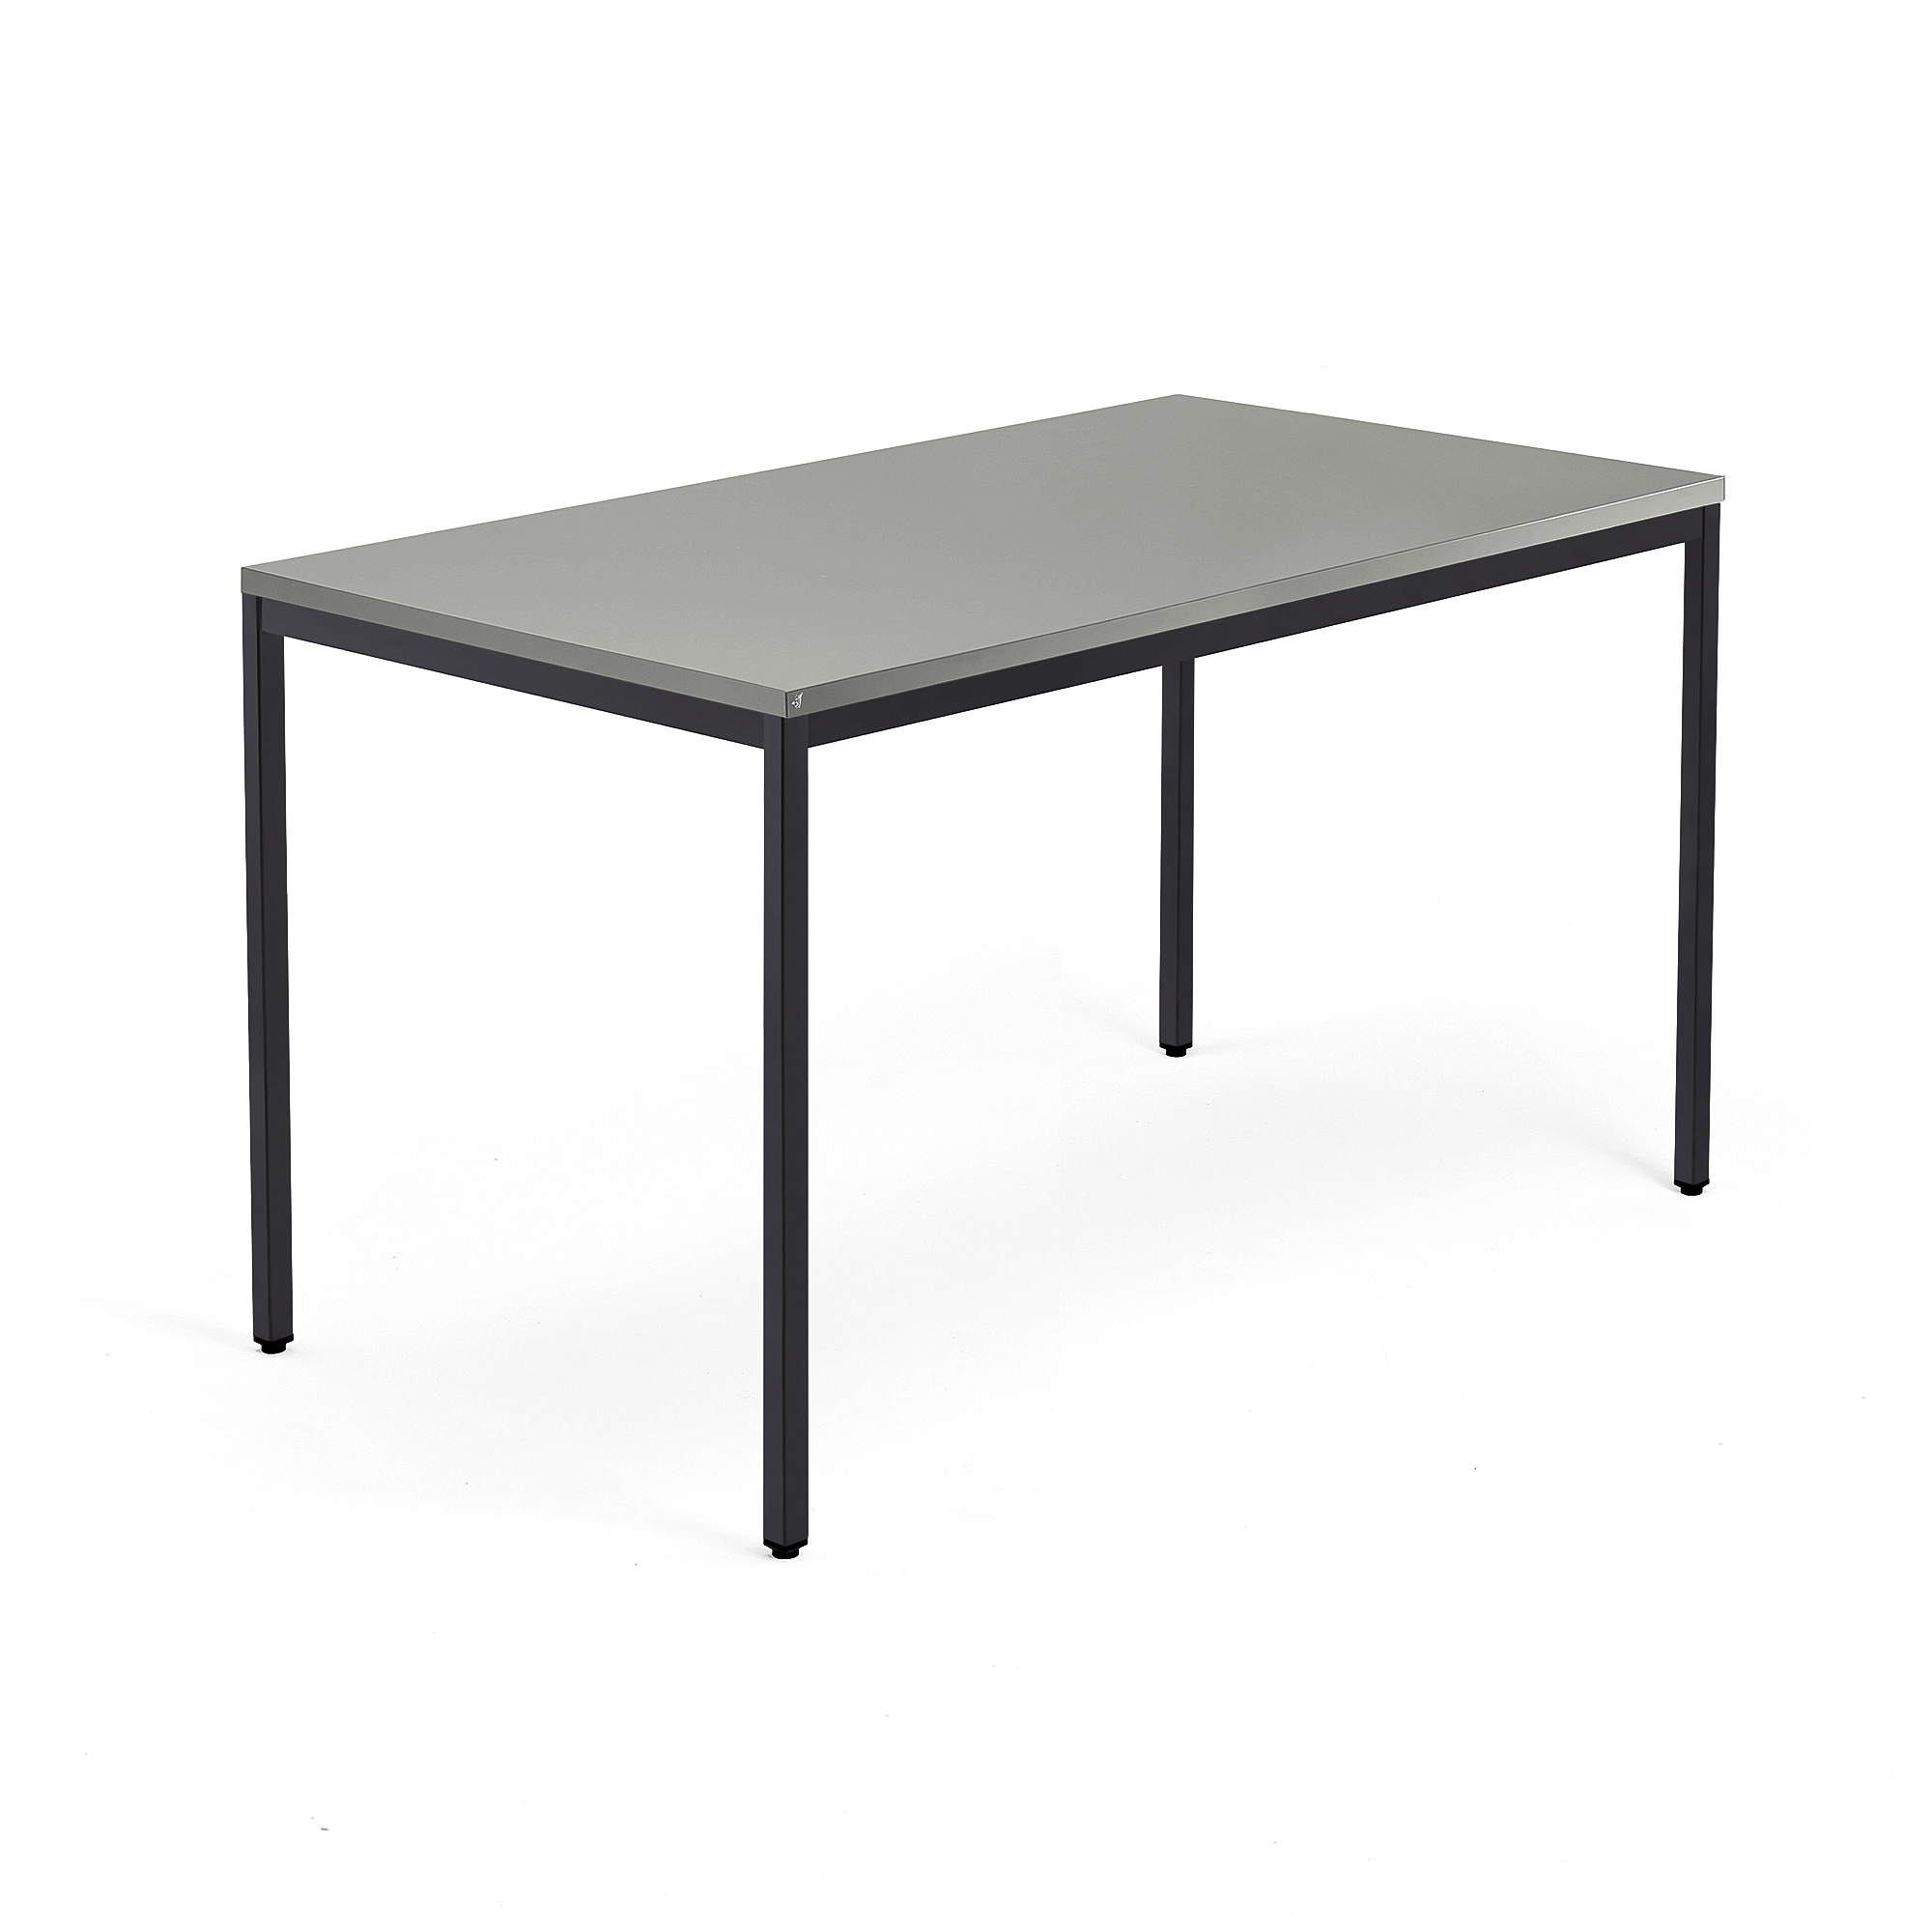 Psací stůl QBUS, 4 nohy, 1400x800 mm, černý rám, světle šedá